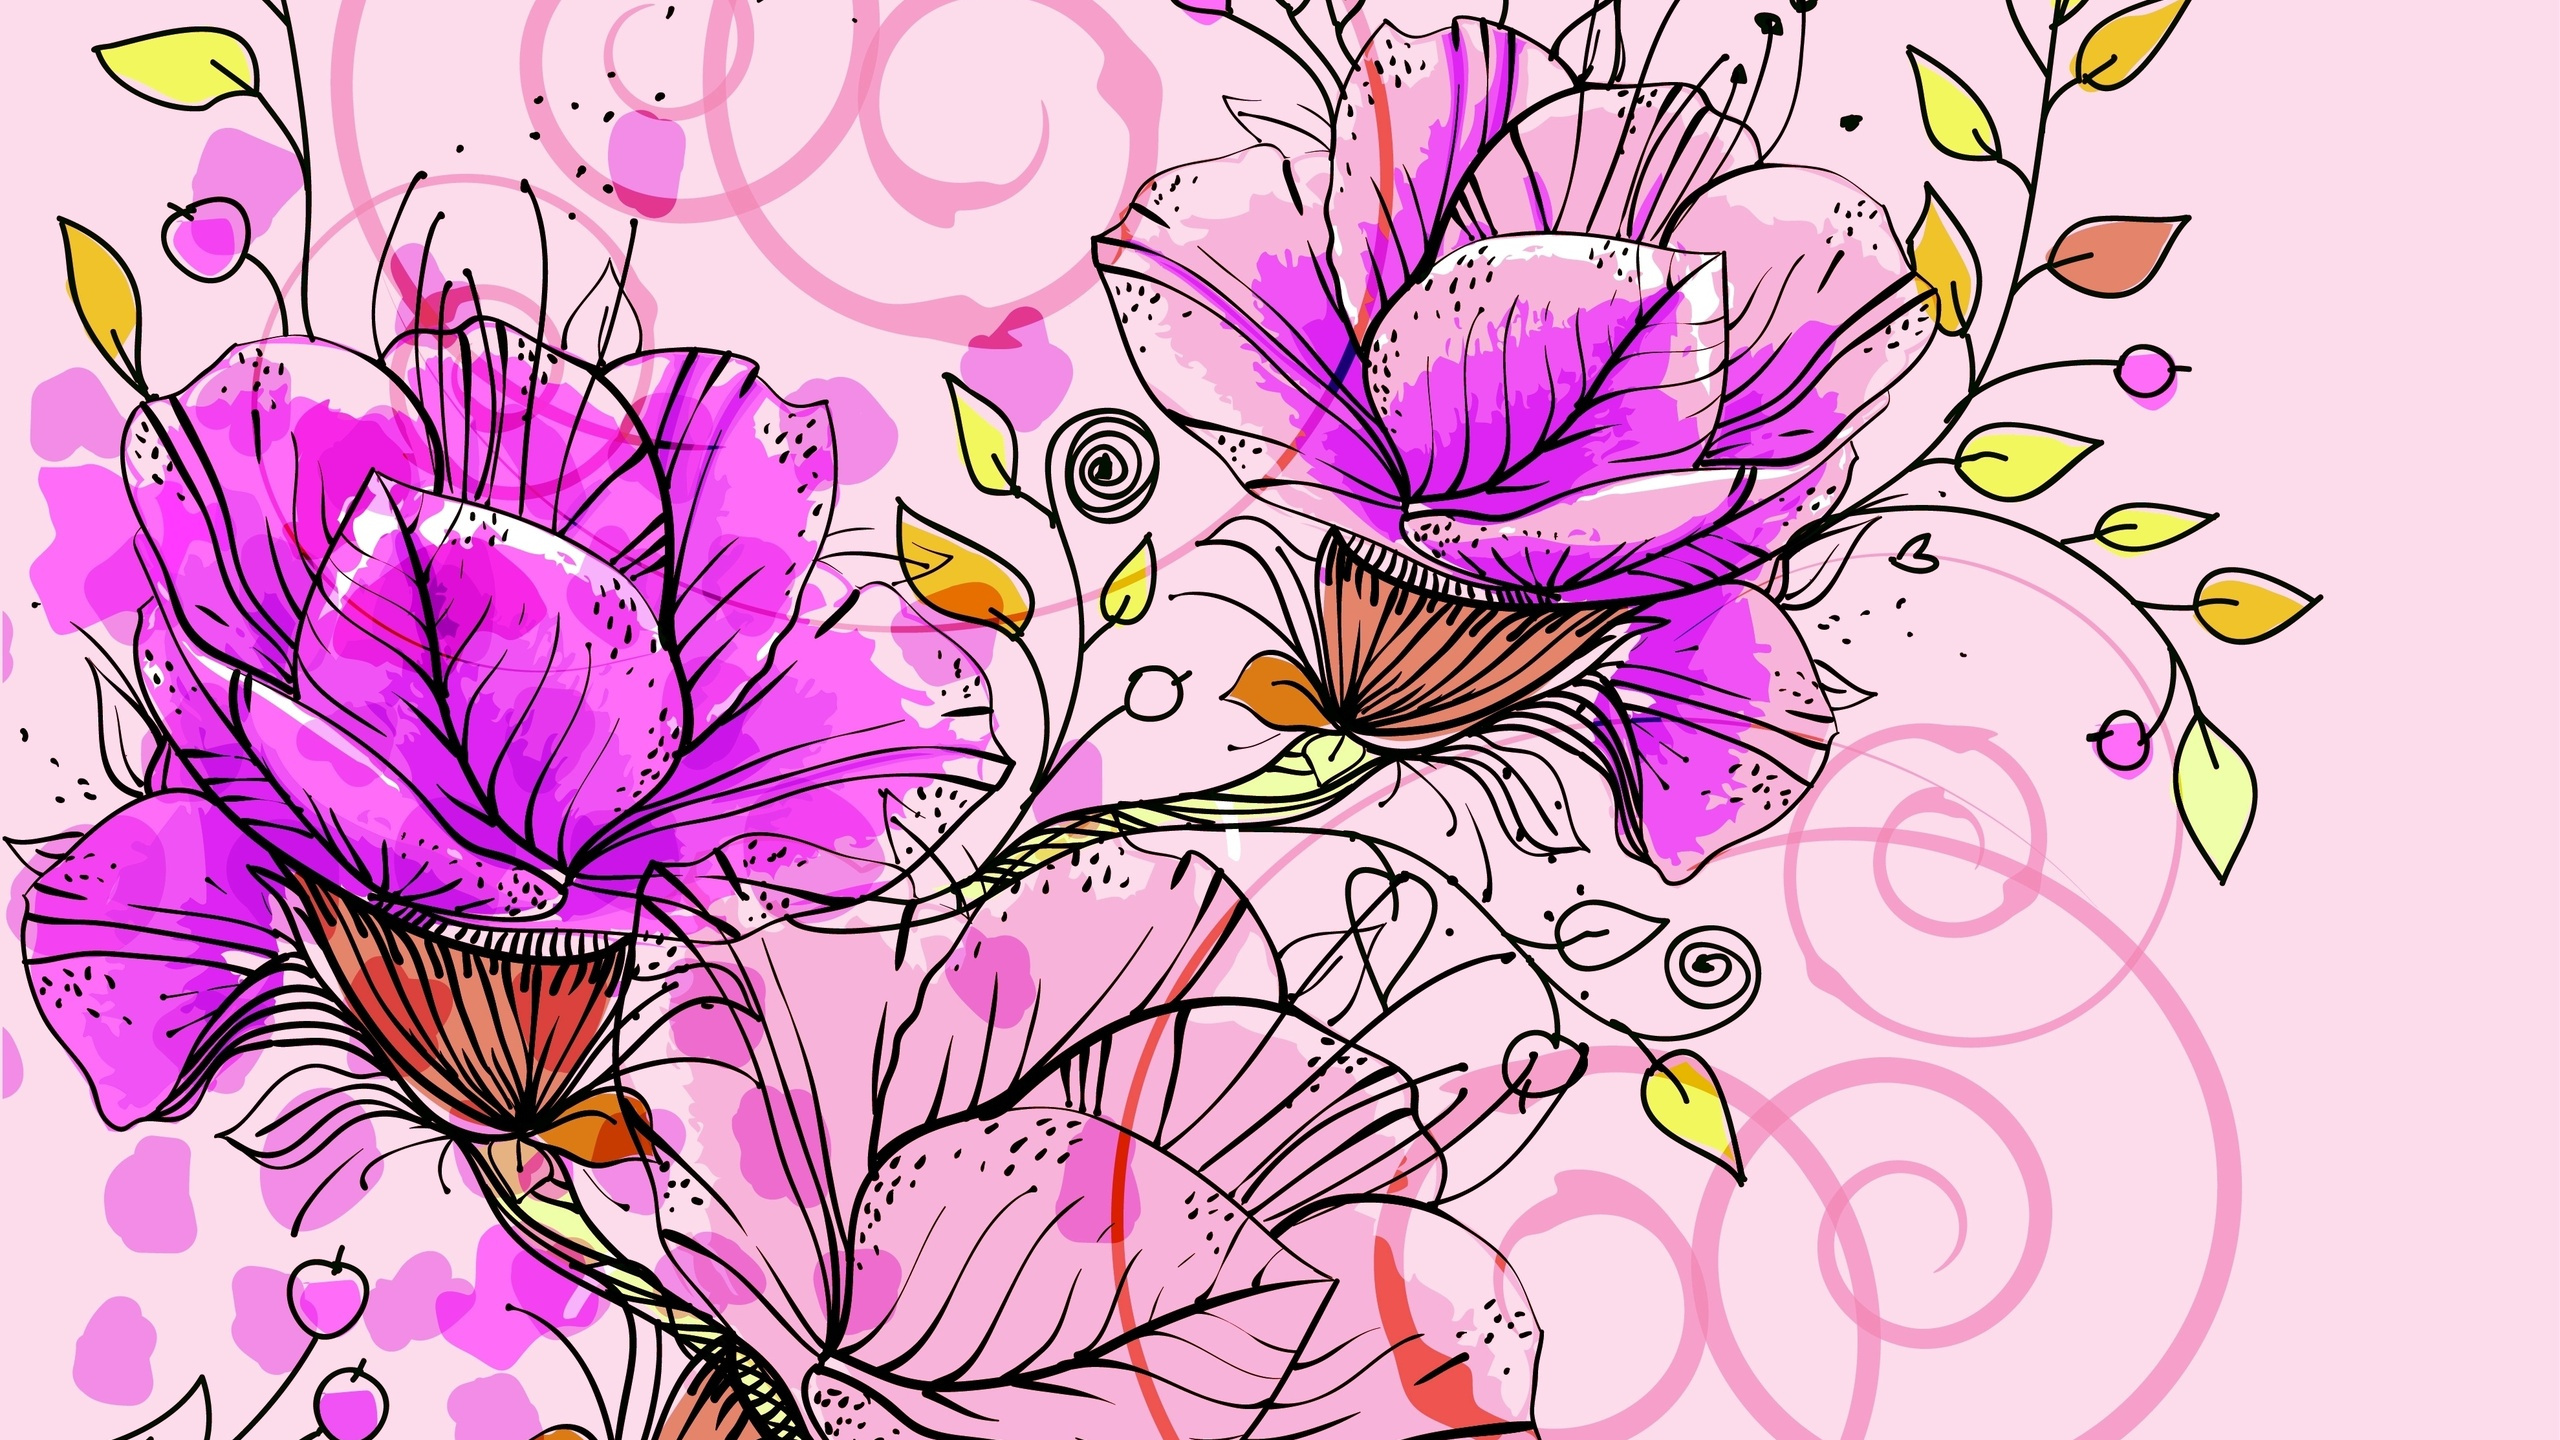 花卉设计, 矢量图形, 抽象艺术, 显花植物, 装饰艺术 壁纸 2560x1440 允许